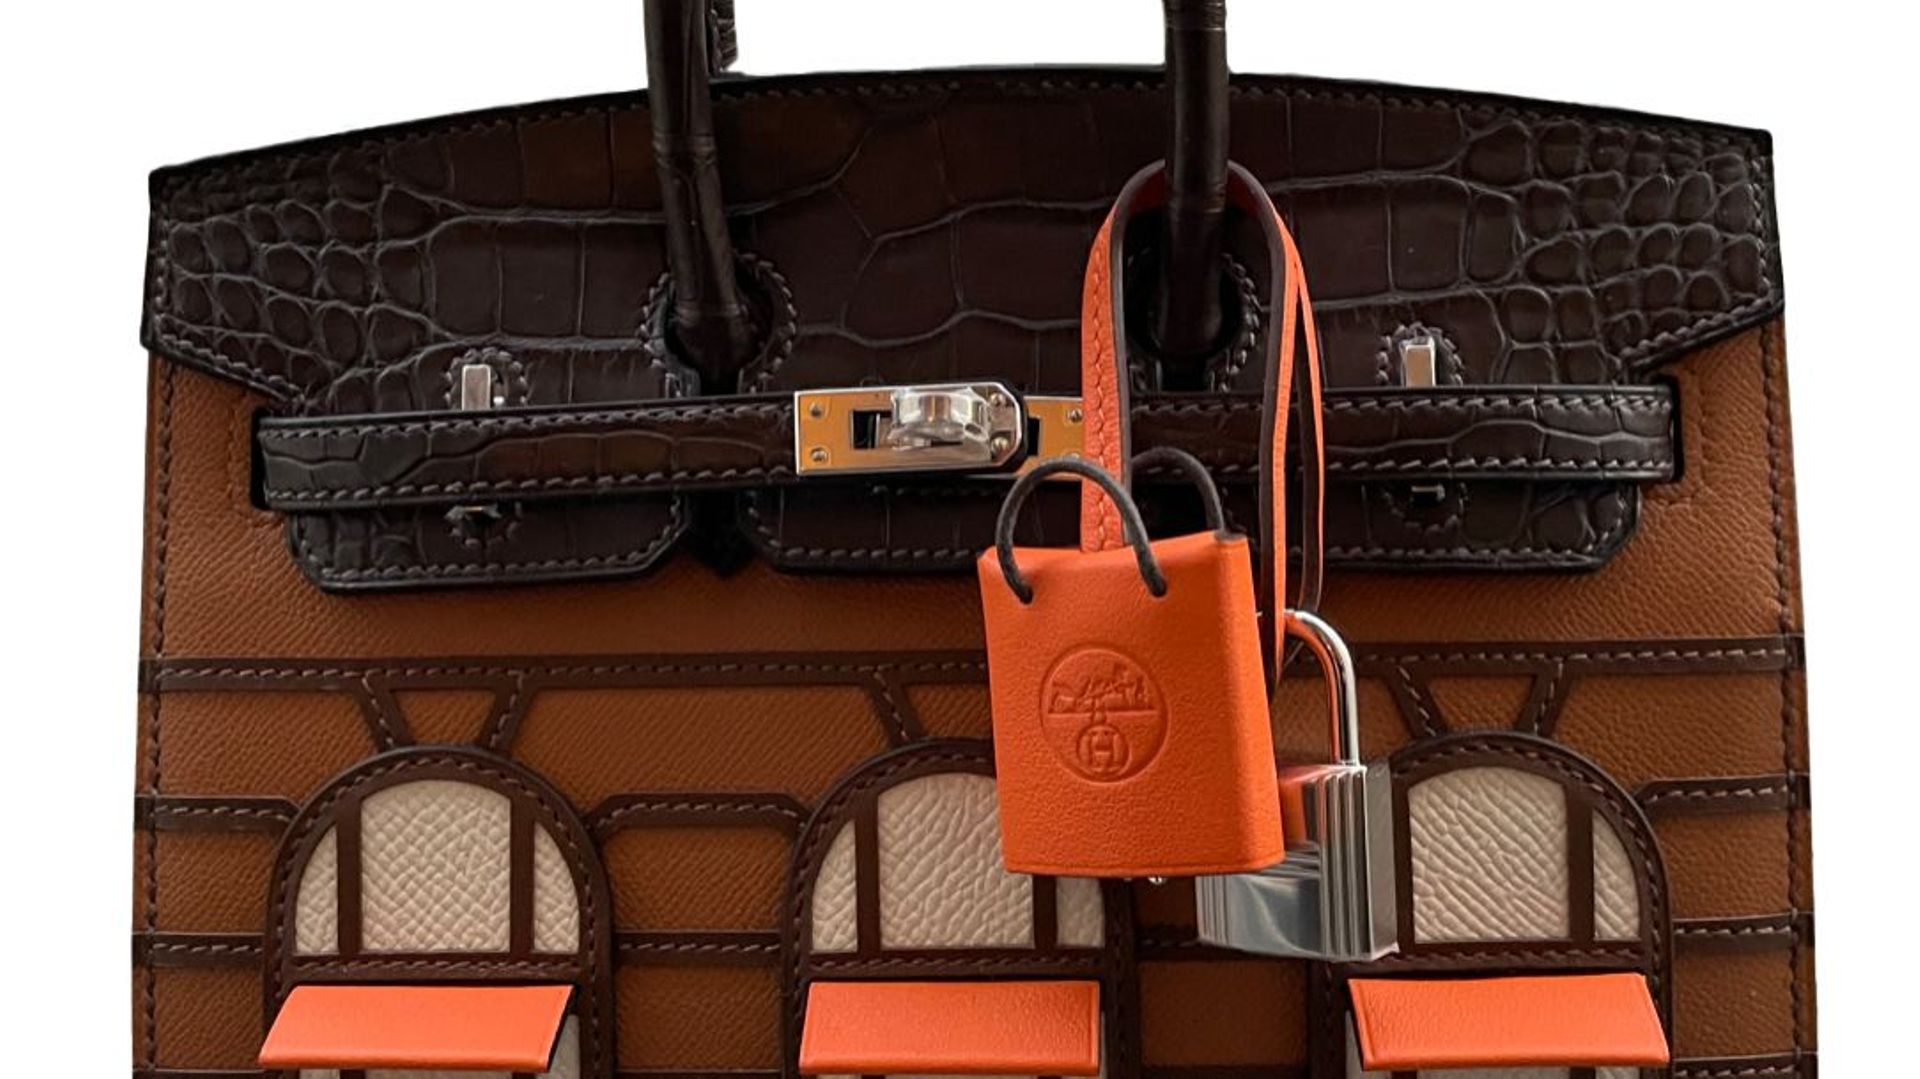 Le sac Birkin Faubourg d'Hermès vendu au prix de 158.000 euros sur Vestiaire Collective.